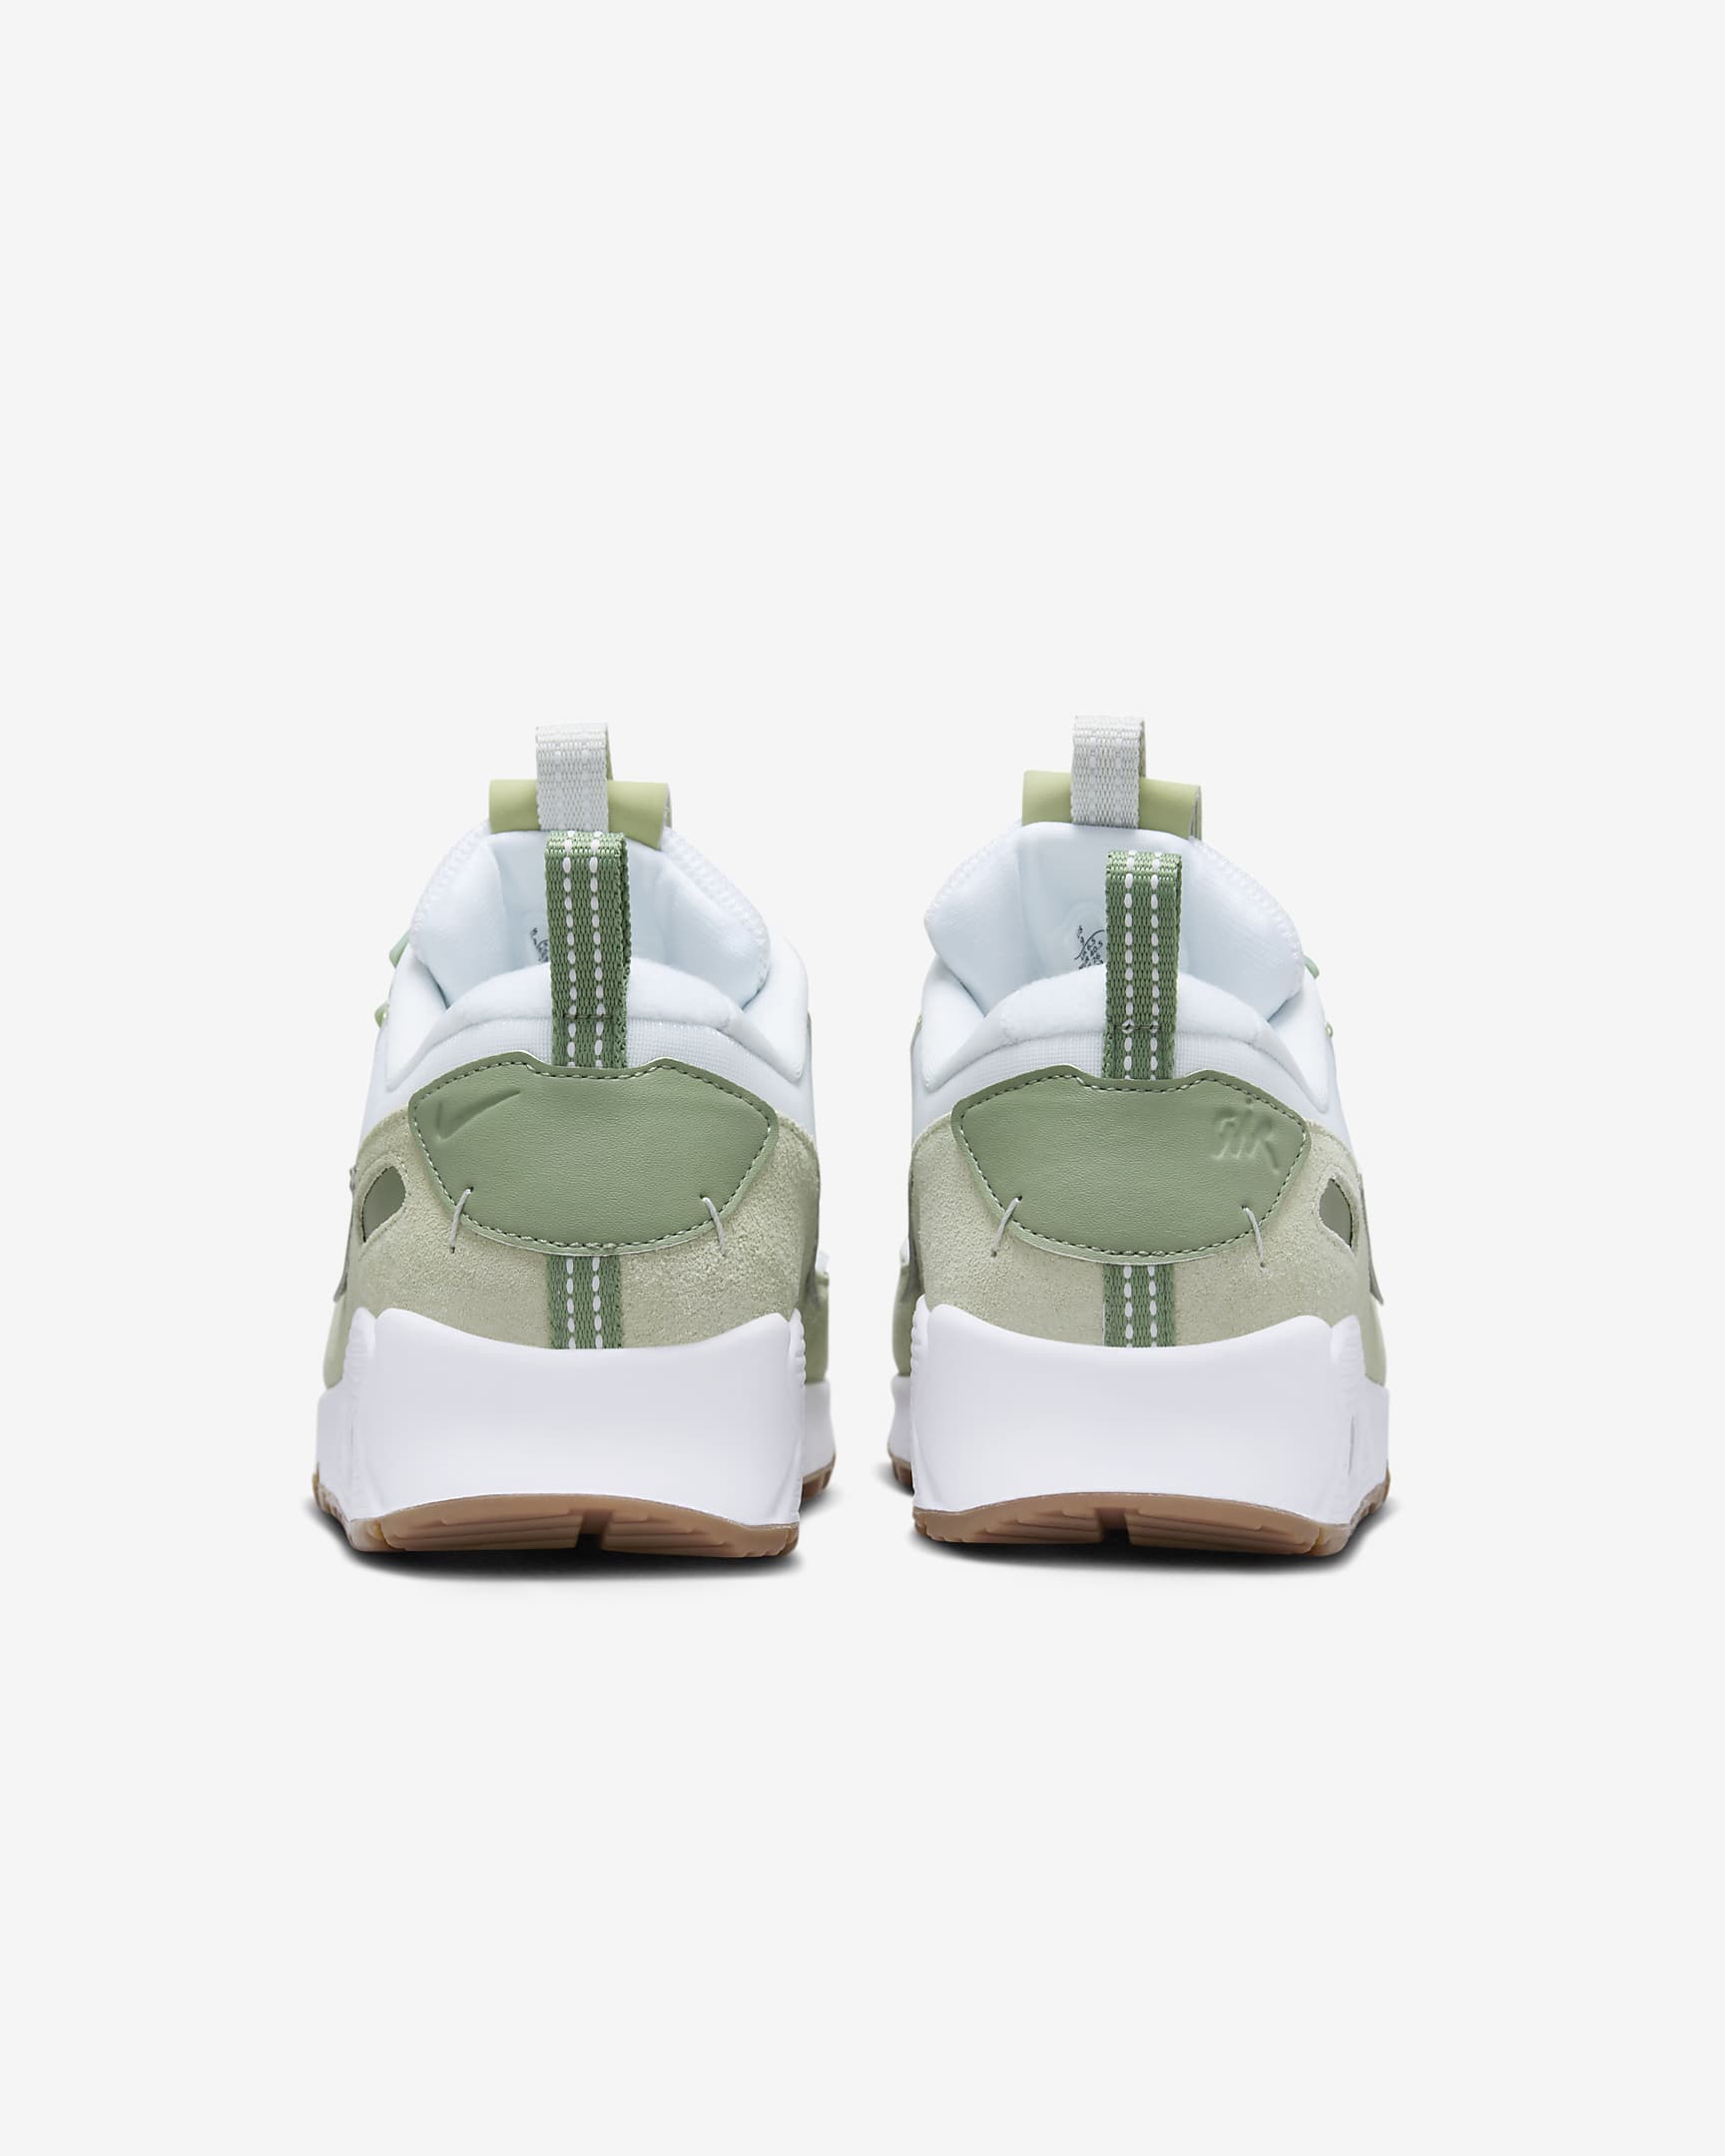 Nike Air Max 90 Futura Women's Shoes - White/Olive Aura/Gum Medium Brown/Oil Green